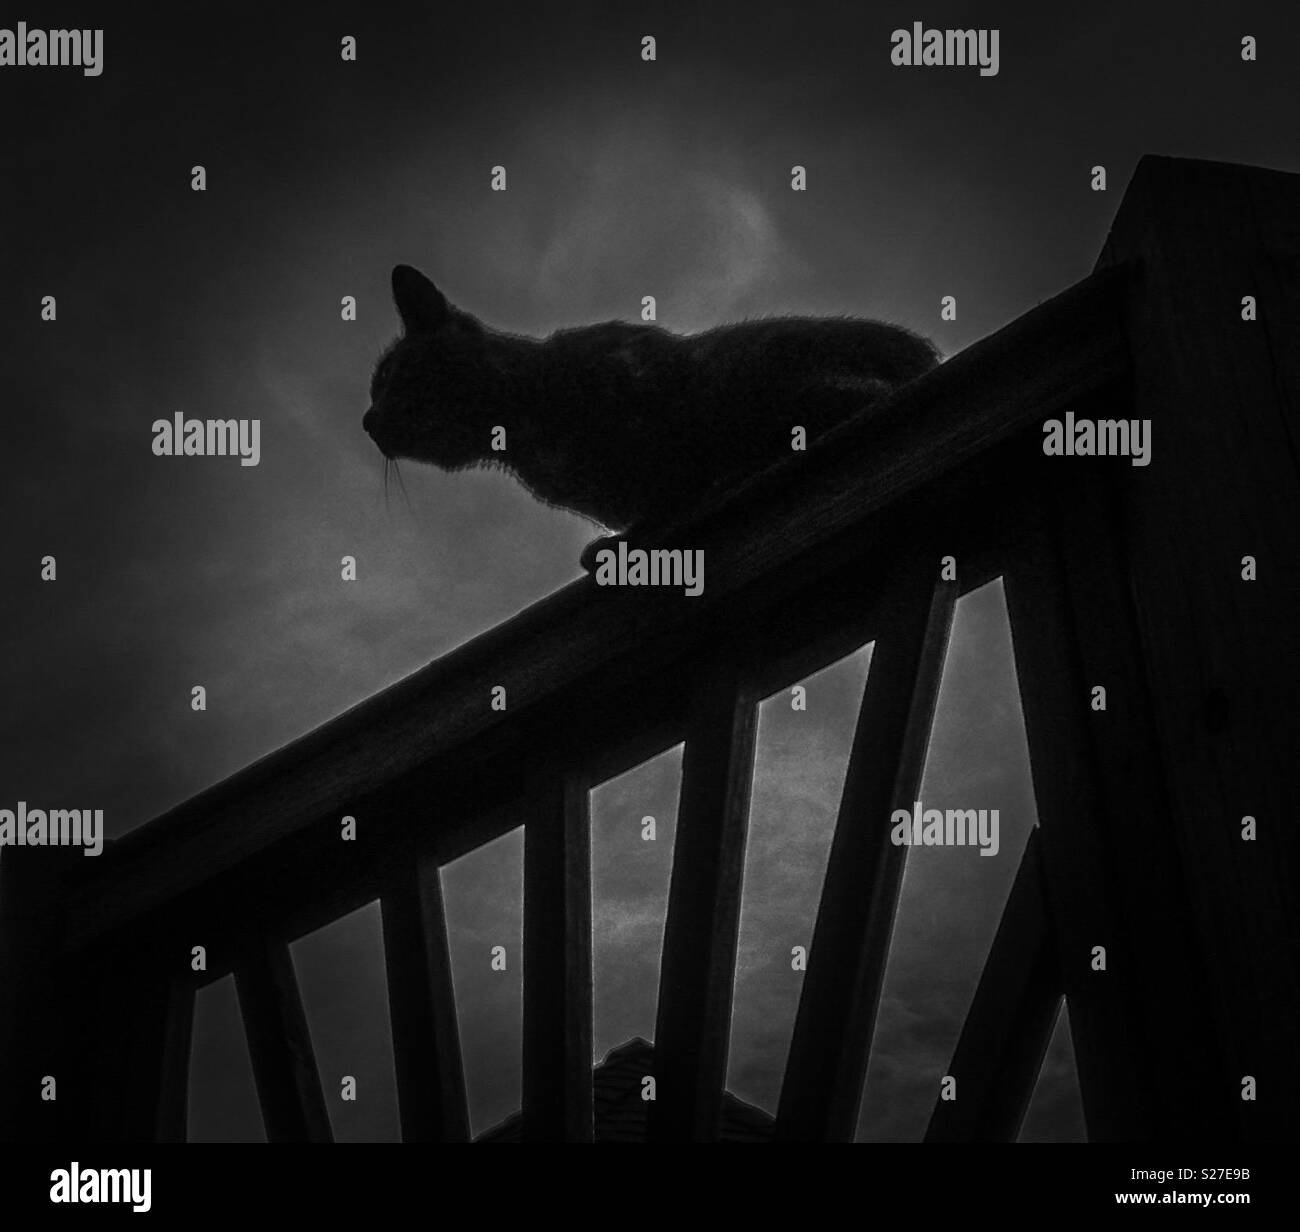 Noir et blanc photo de chat sur rail porche silhouetted against sky Banque D'Images